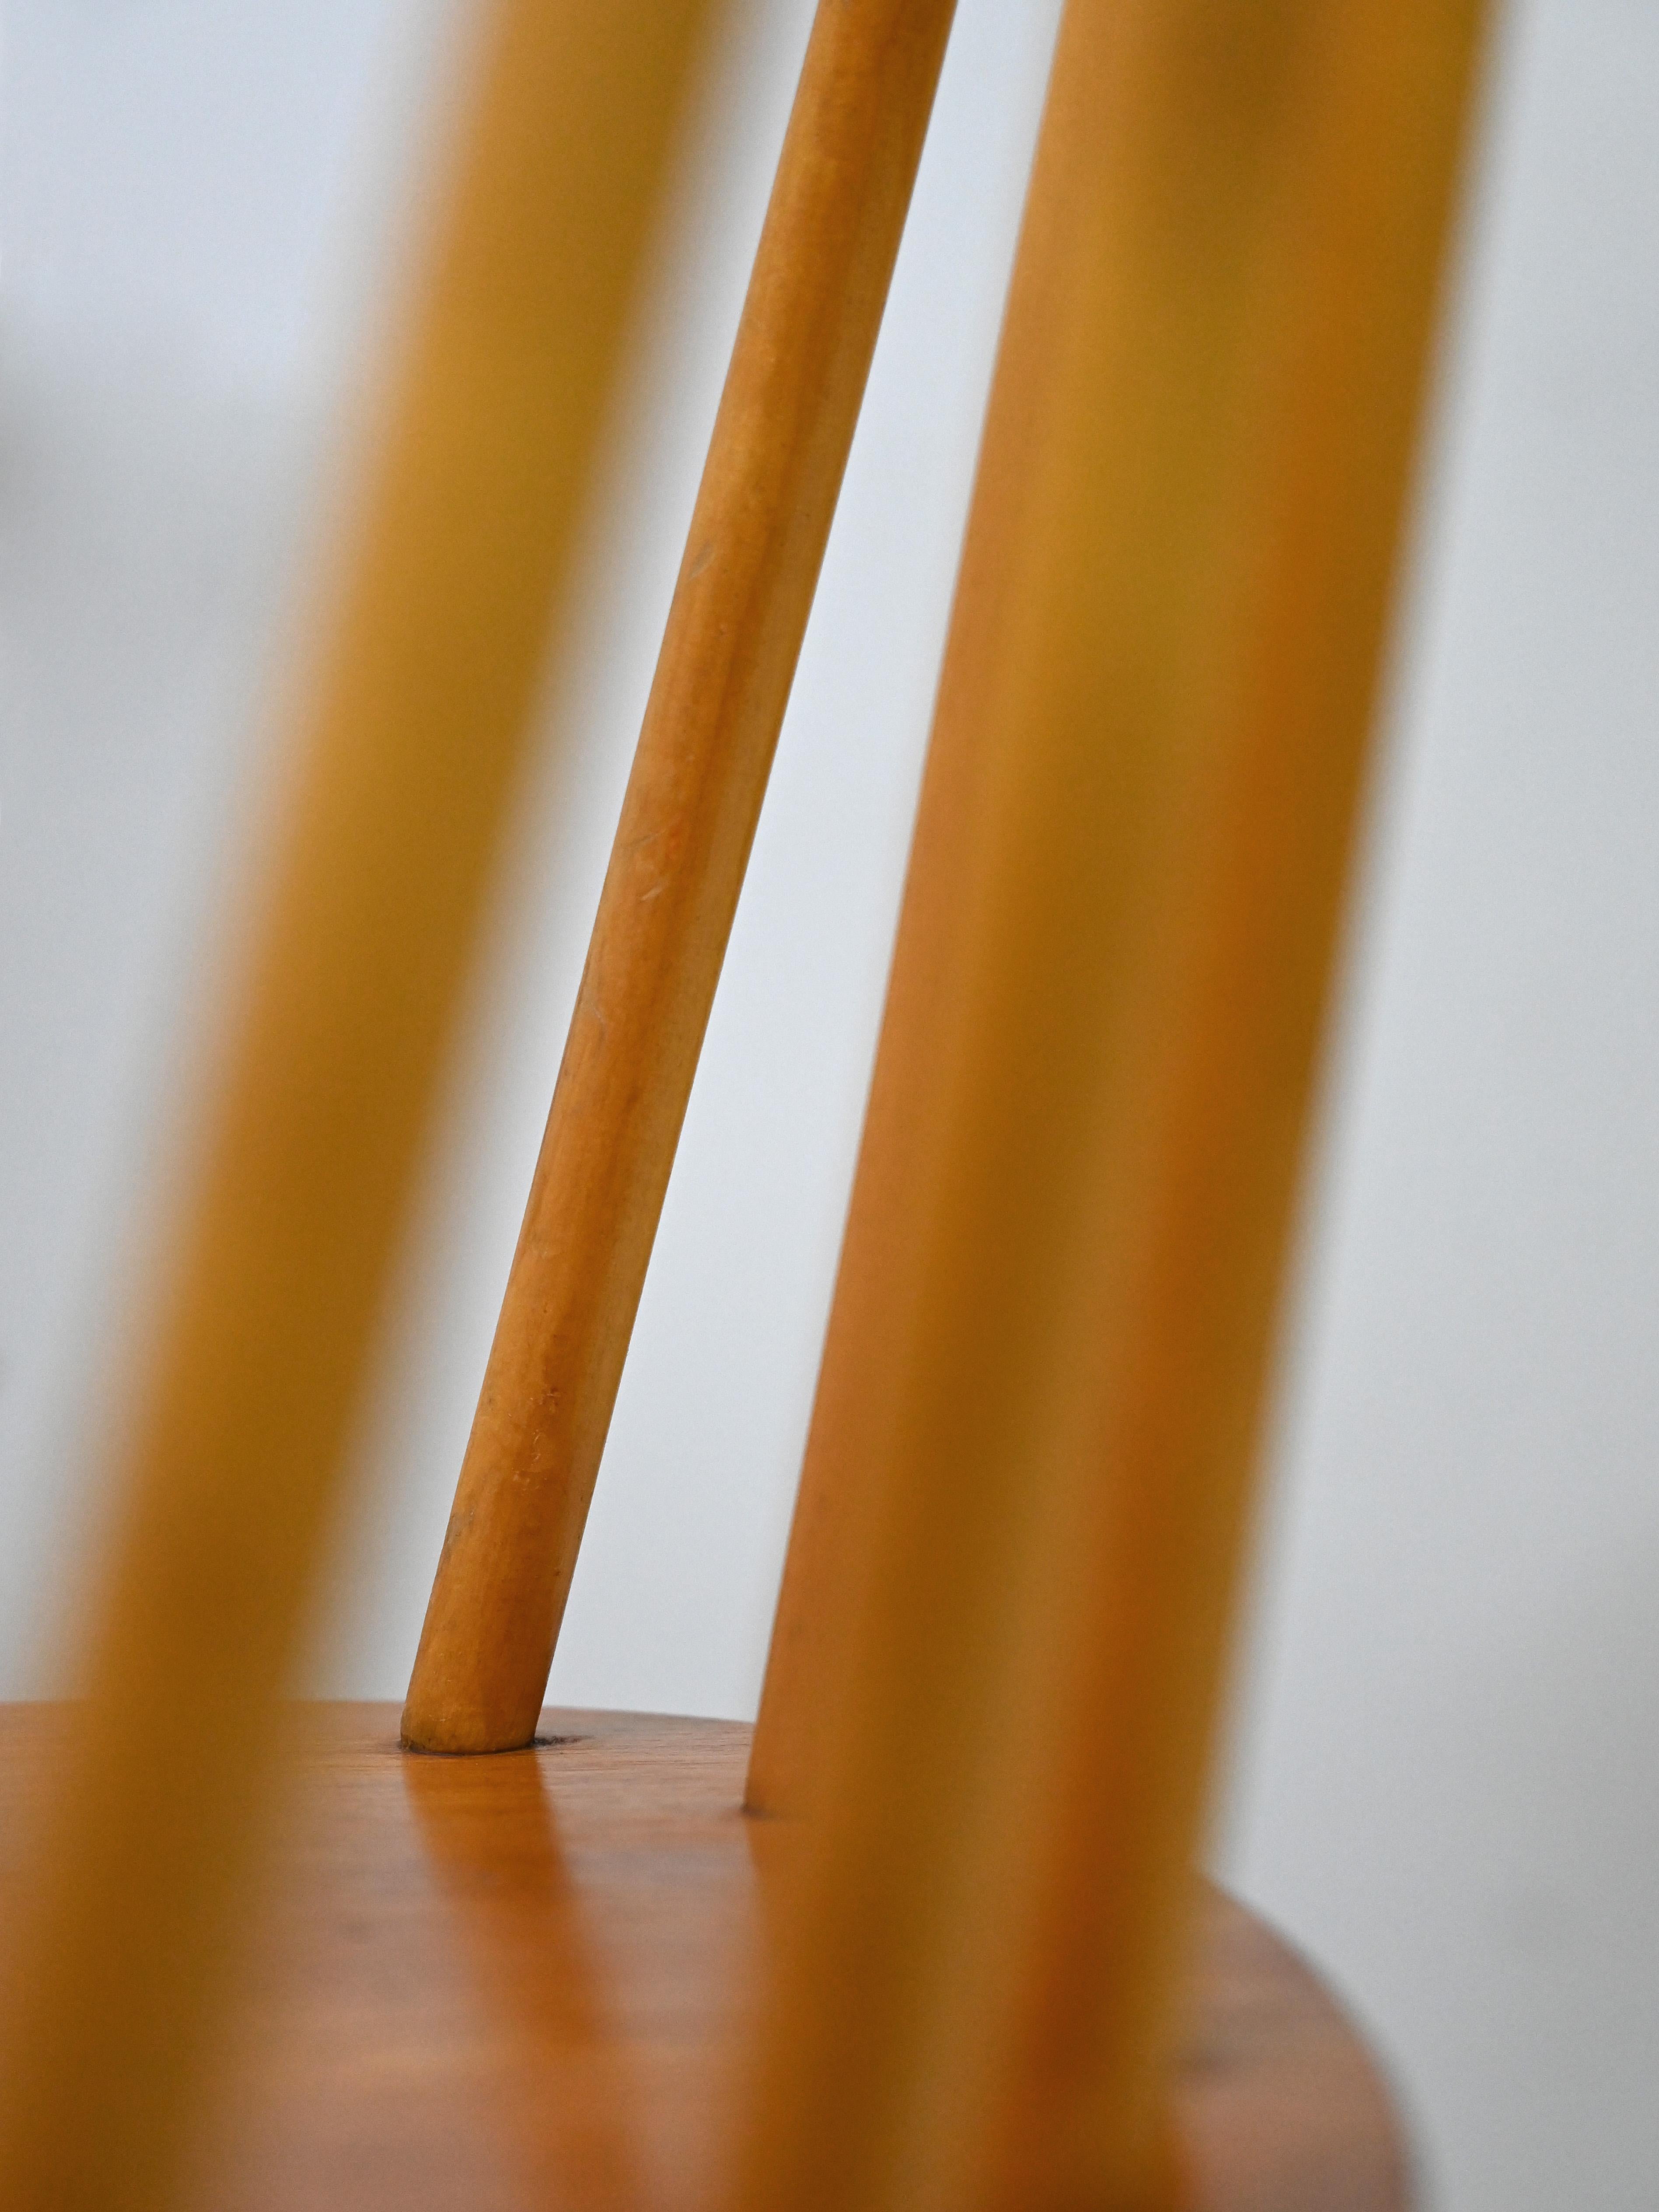 Set of Four 'Pinnstol' Chairs by Edsby Verken 1